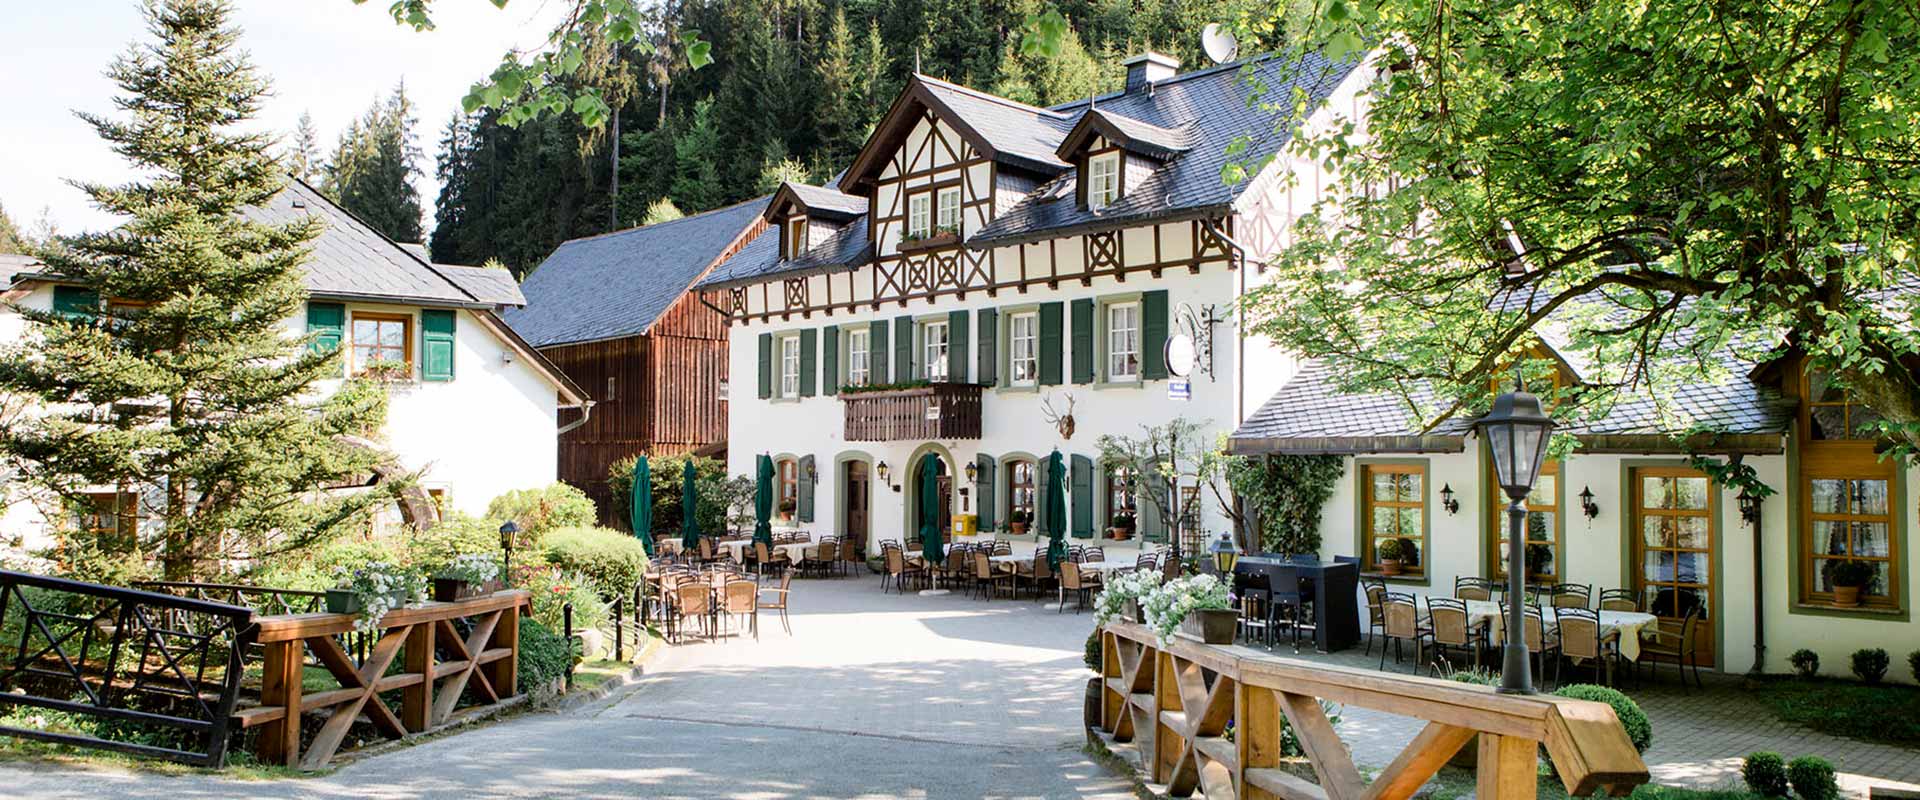 Romantisches Gasthaus Bischofsmühle im Naturpark Frankenwald